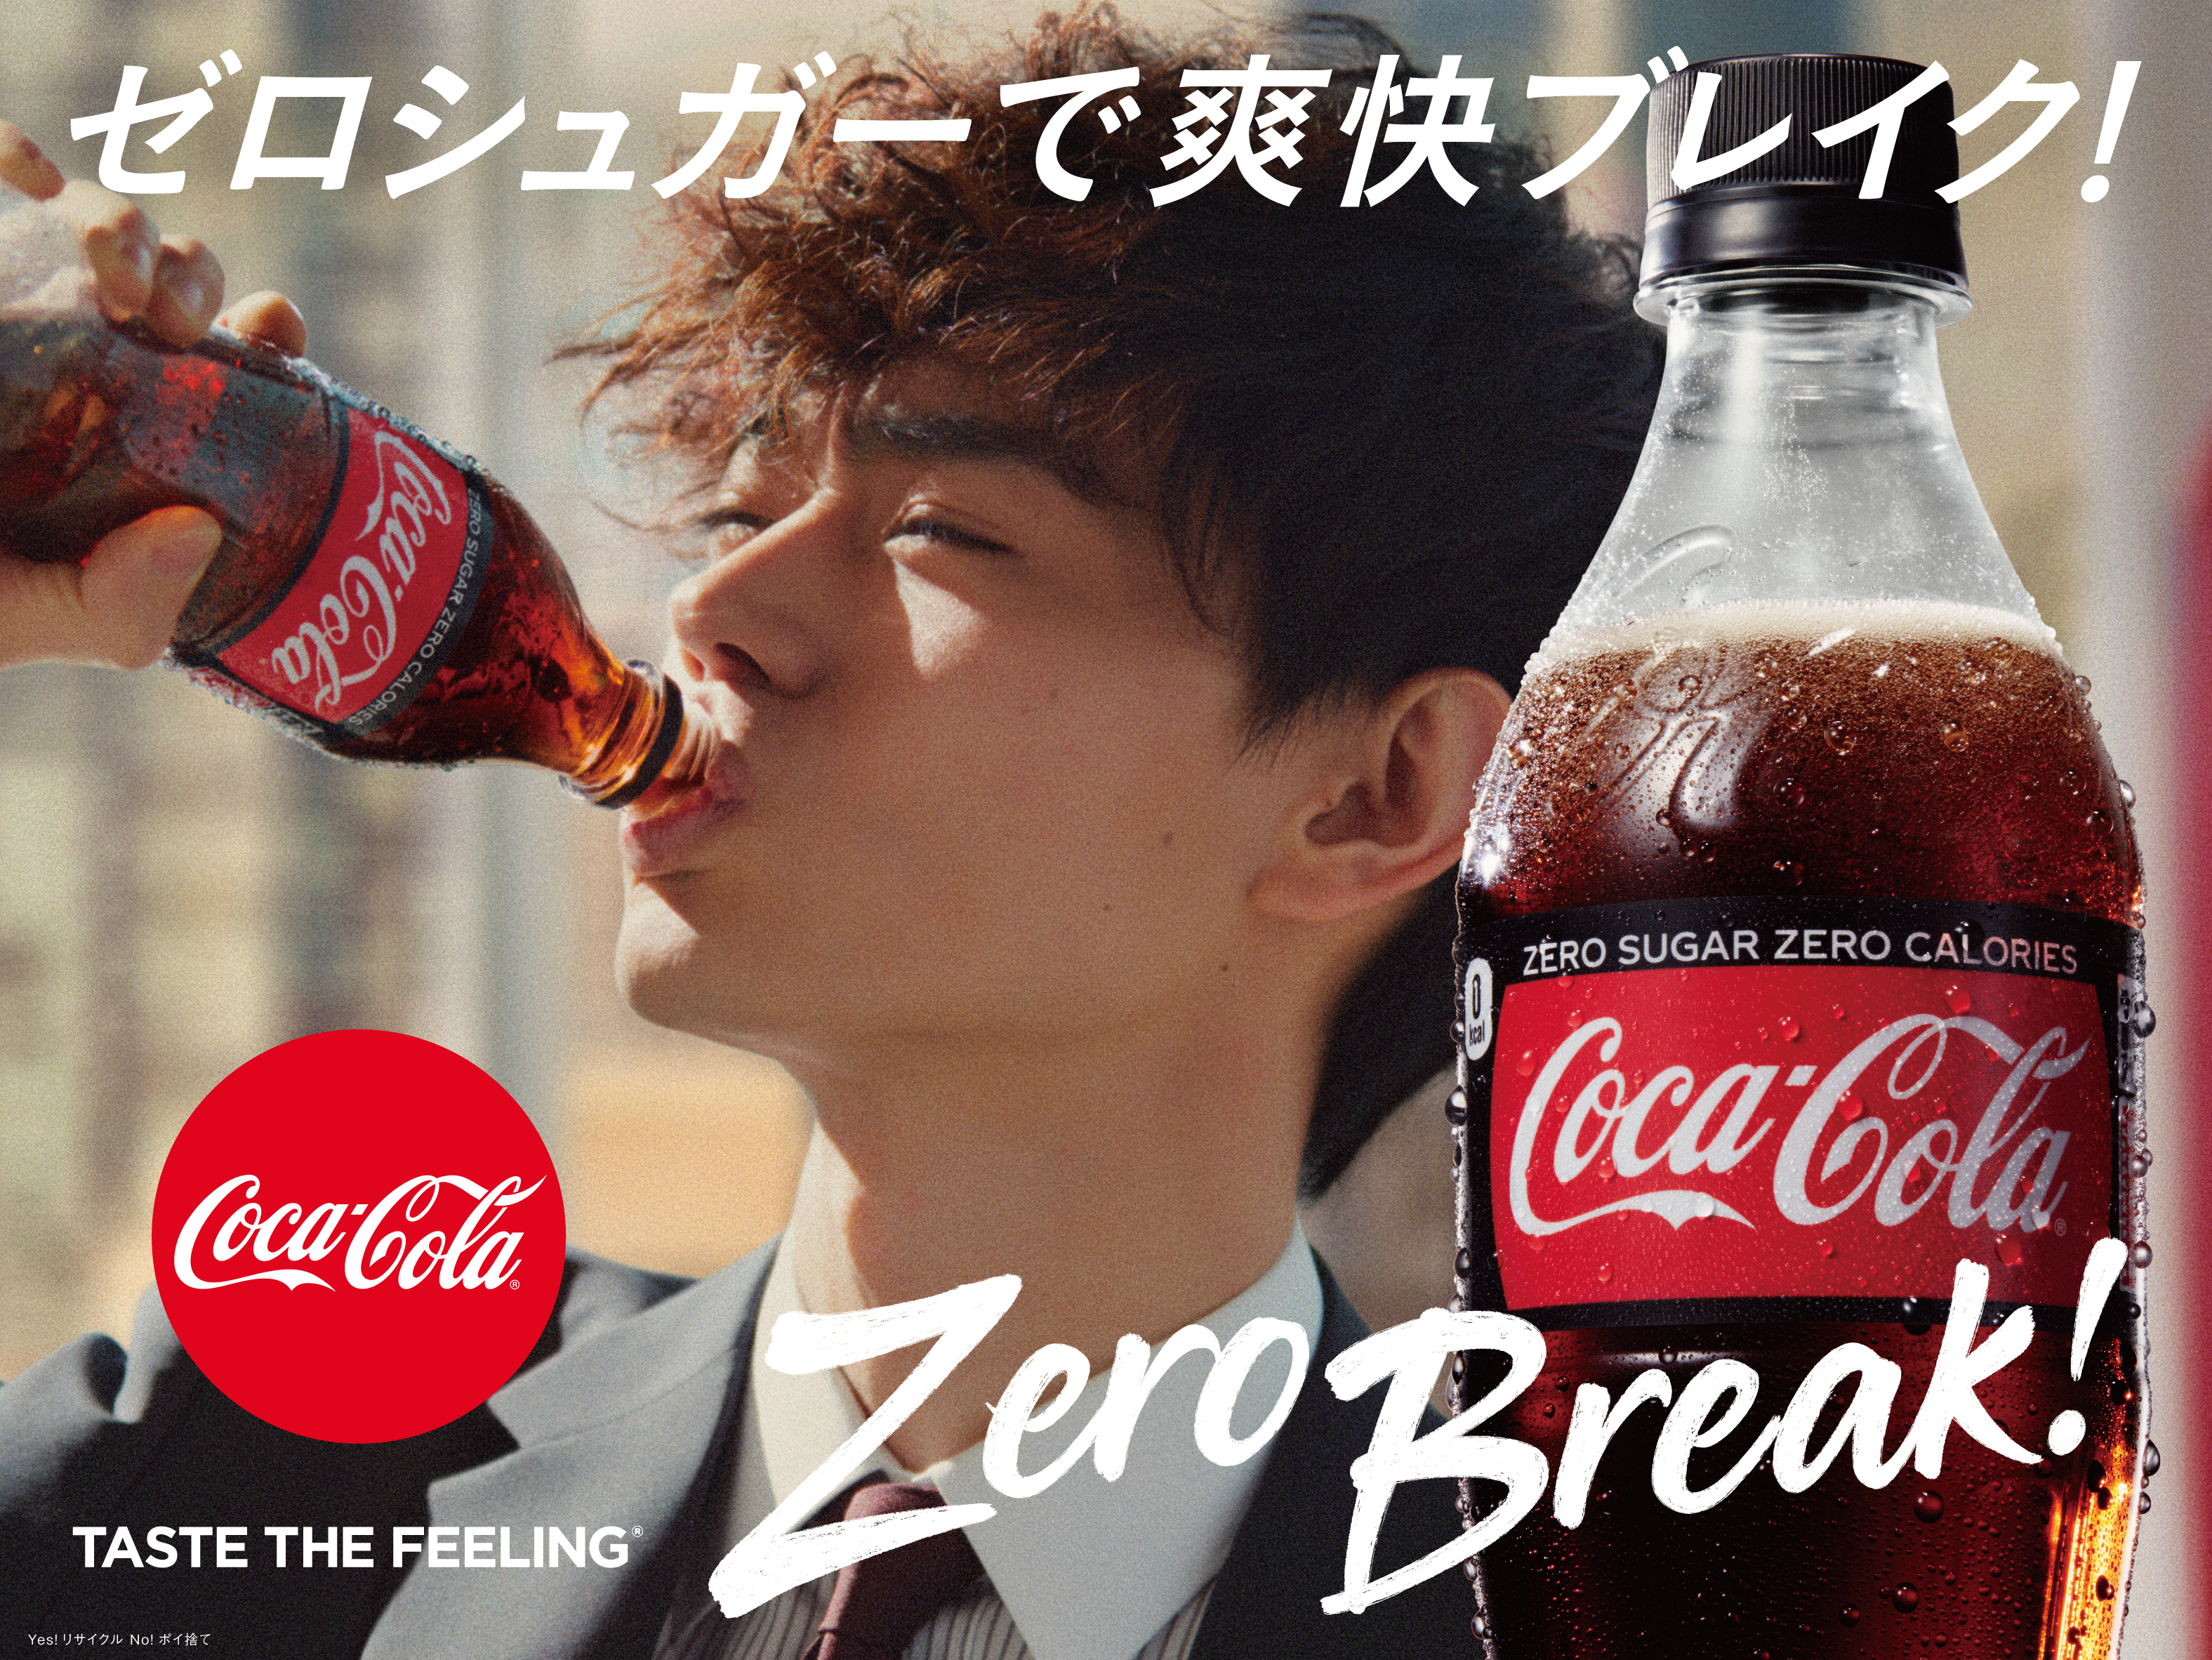 コカ コーラ ゼロ 3年ぶりのtvcmに菅田将暉さんが初登場 新tvcm コカ コーラ ゼロ Zero Break 篇 4月13日 土 から全国で放映開始 日本コカ コーラ株式会社のプレスリリース